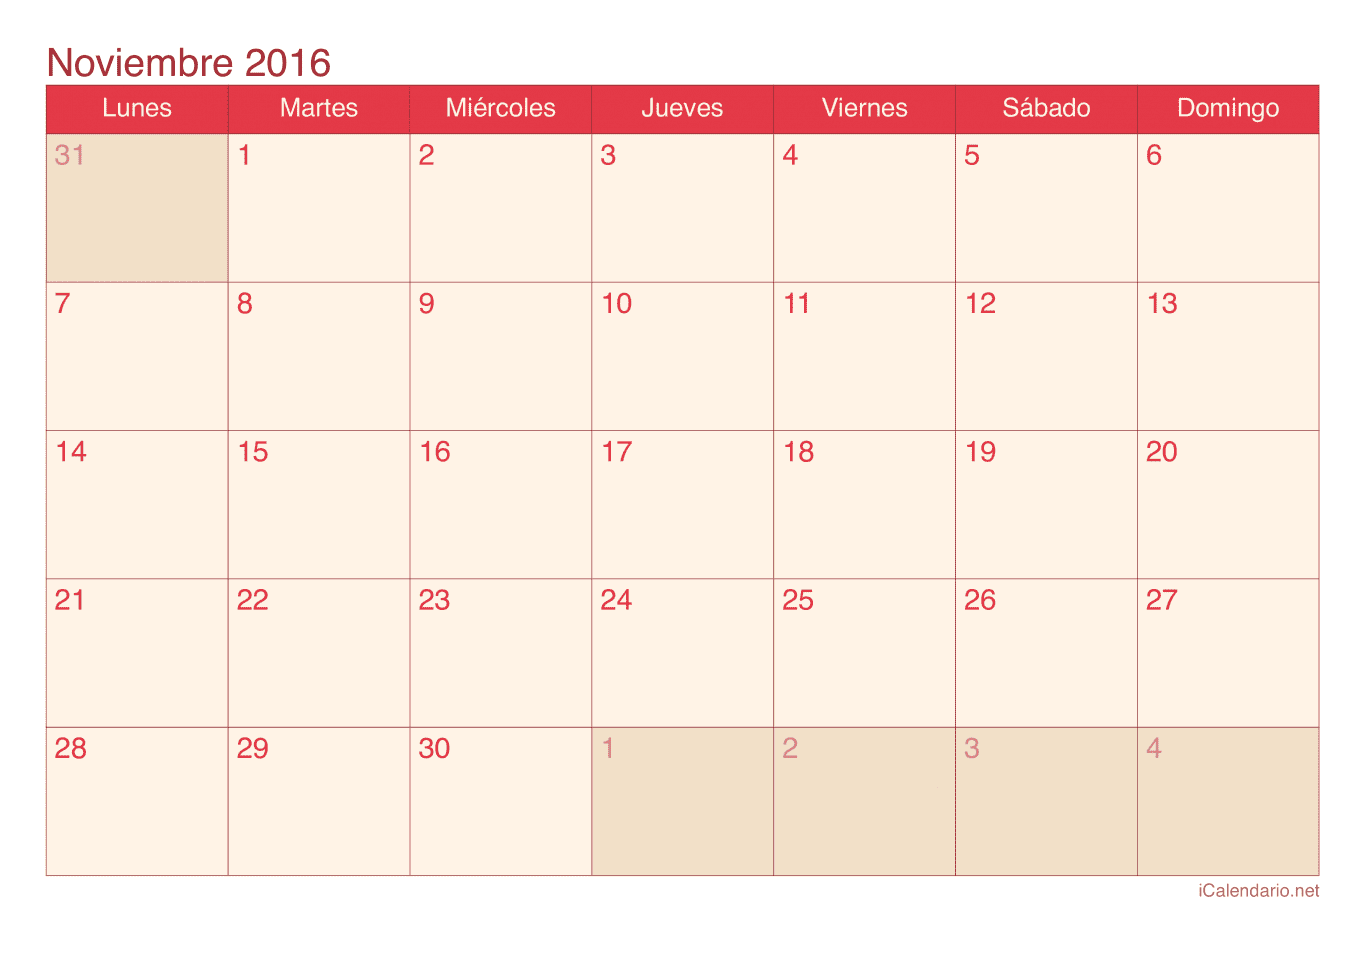 Calendario de noviembre 2016 - Cherry